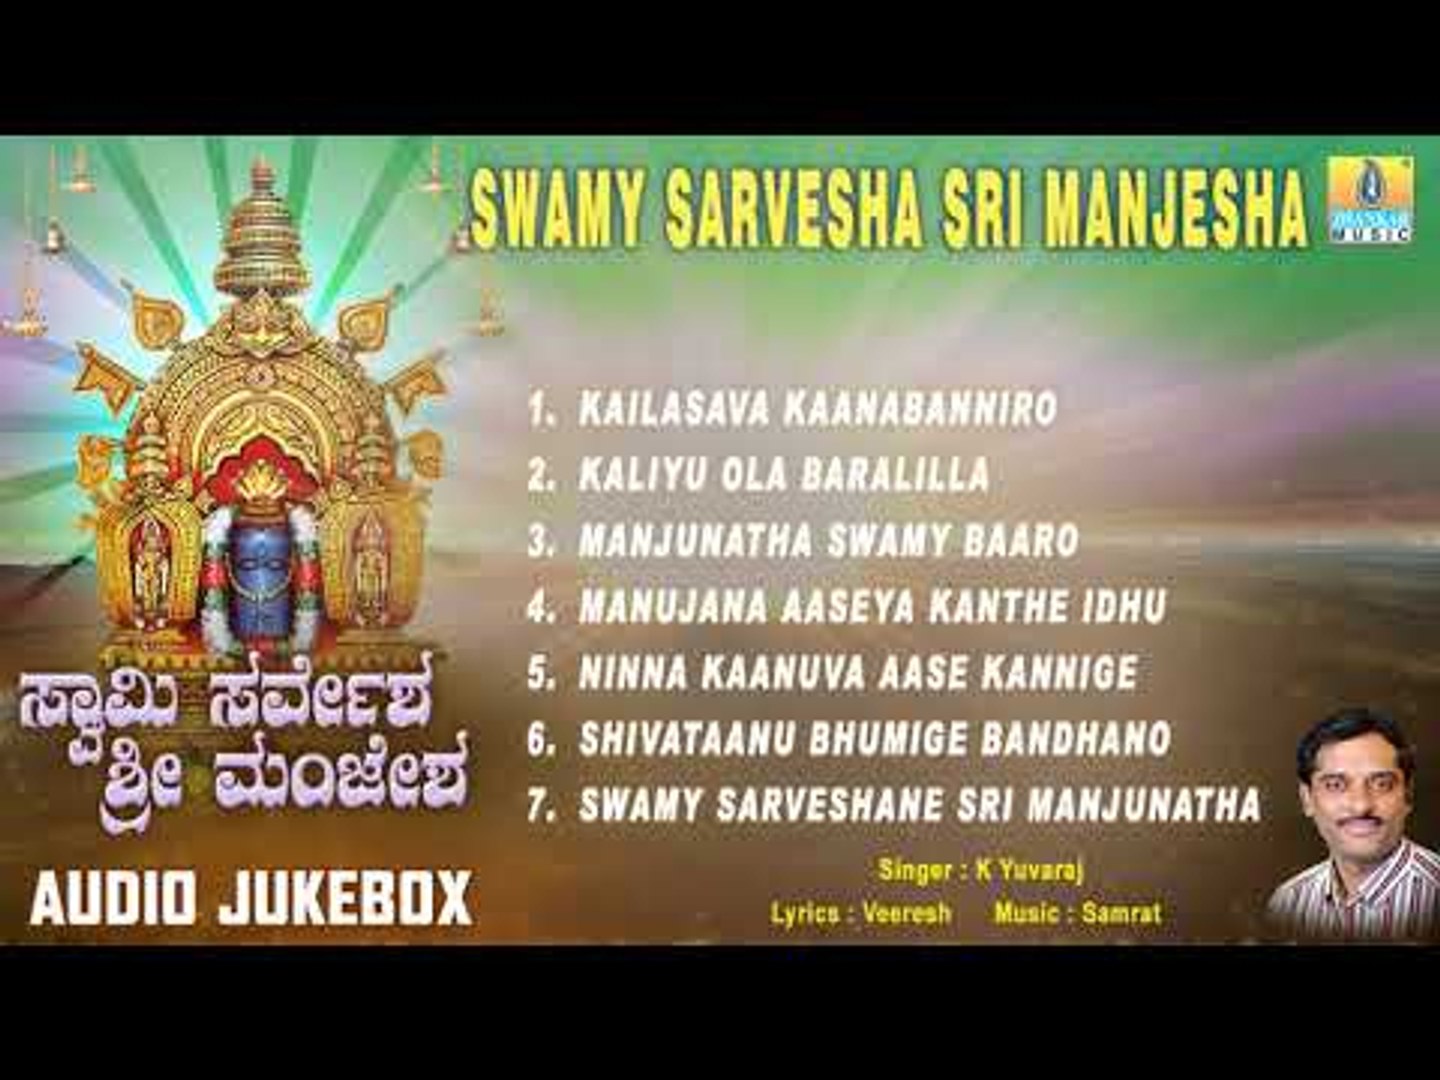 Sri Manjunatha Songs | Swamy Sarvesha Sri Manjesha | Dharmasthala  Manjunatha Swamy Songs - video Dailymotion